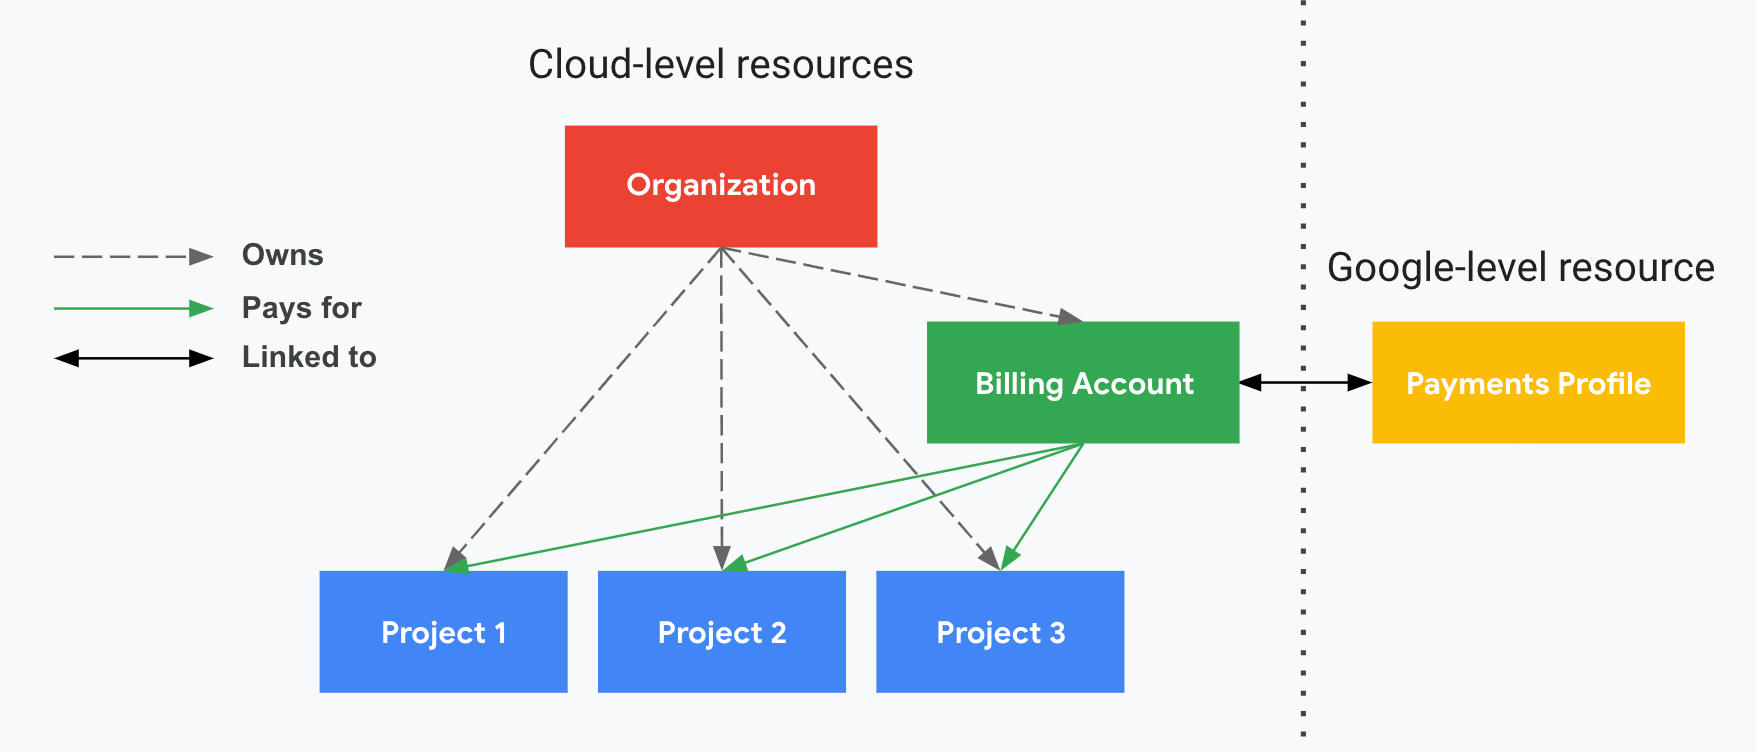 说明了项目与您的 Cloud Billing 帐号、组织以及您的付款资料之间的关系。一侧显示了您的 Cloud 级资源（组织、Cloud Billing 帐号和关联项目），另一侧显示了您的 Google 级资源（付款资料），两侧由垂直虚线分隔。您的项目由您的 Cloud Billing 帐号支付，该帐号已与您的付款资料关联。组织使用 IAM 控制所有权。